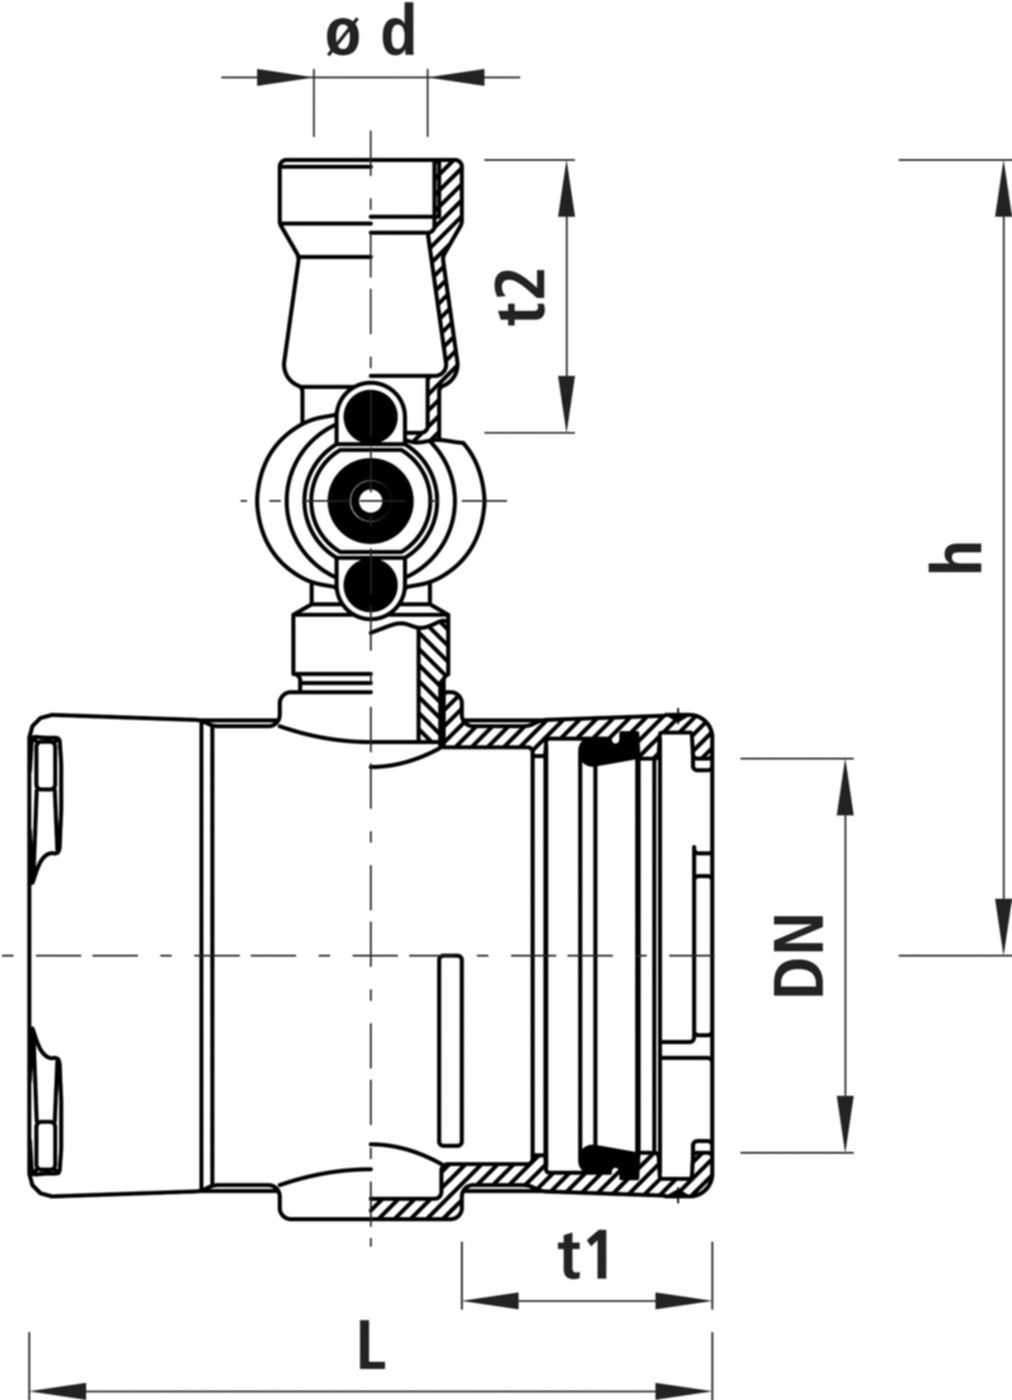 Combi-T-Light mit Steckmuffen, Baio 4390 DN 150 / d 63mm - Hawle Armaturen